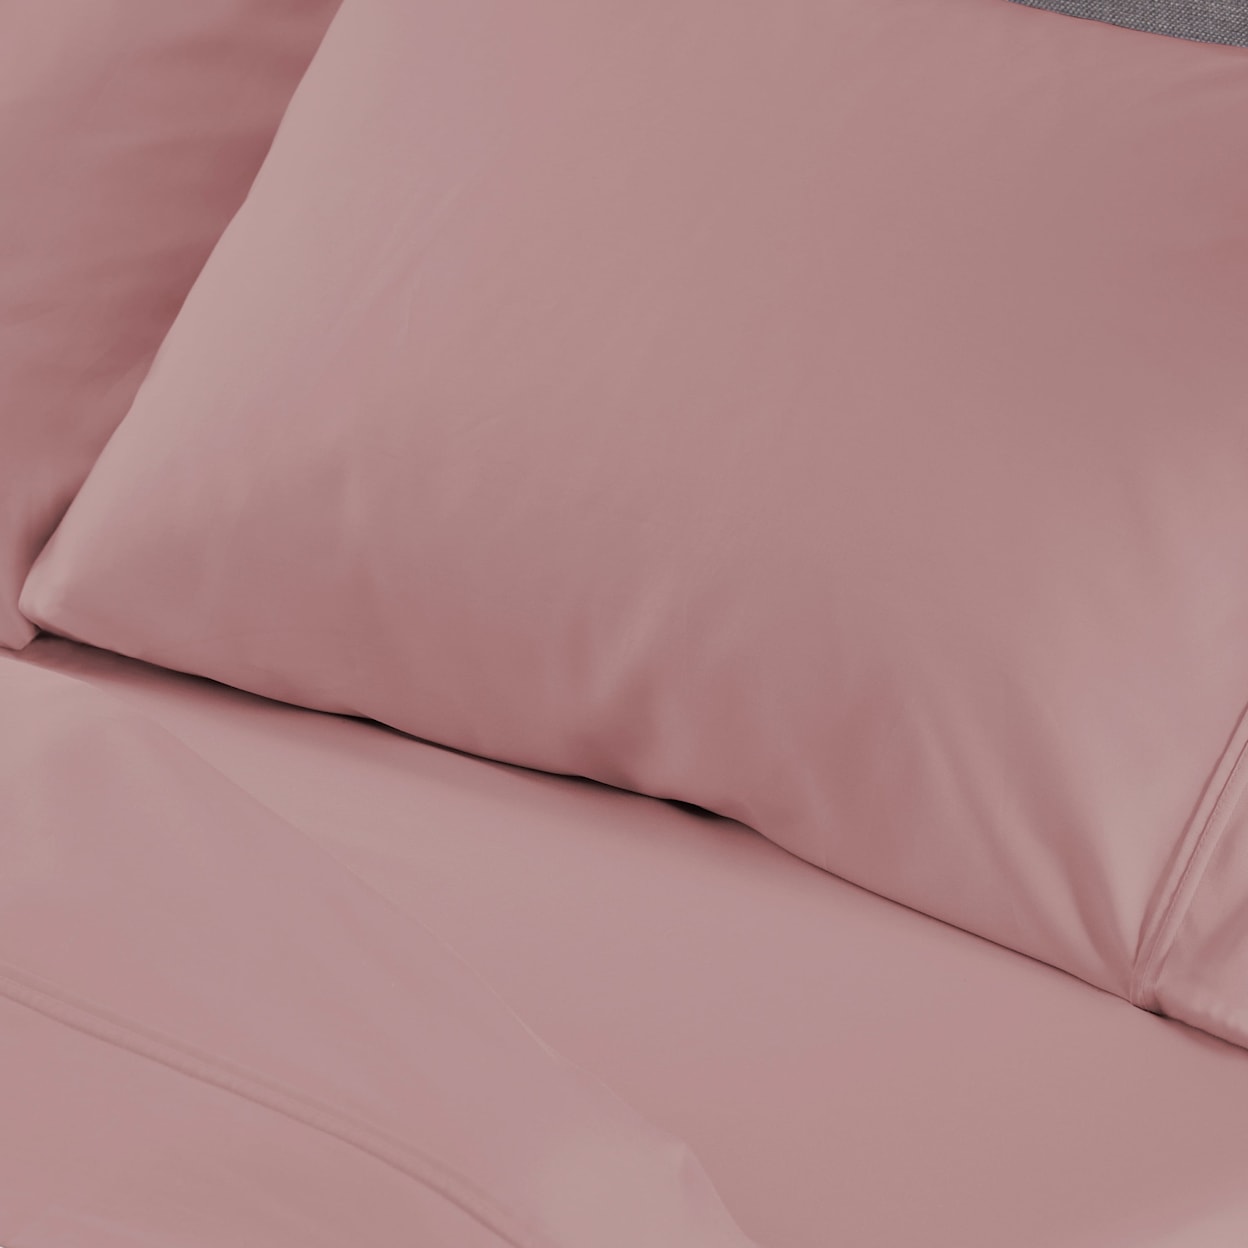 Bedgear Hyper Cotton Sheets Sheet Set, Blush, Queen